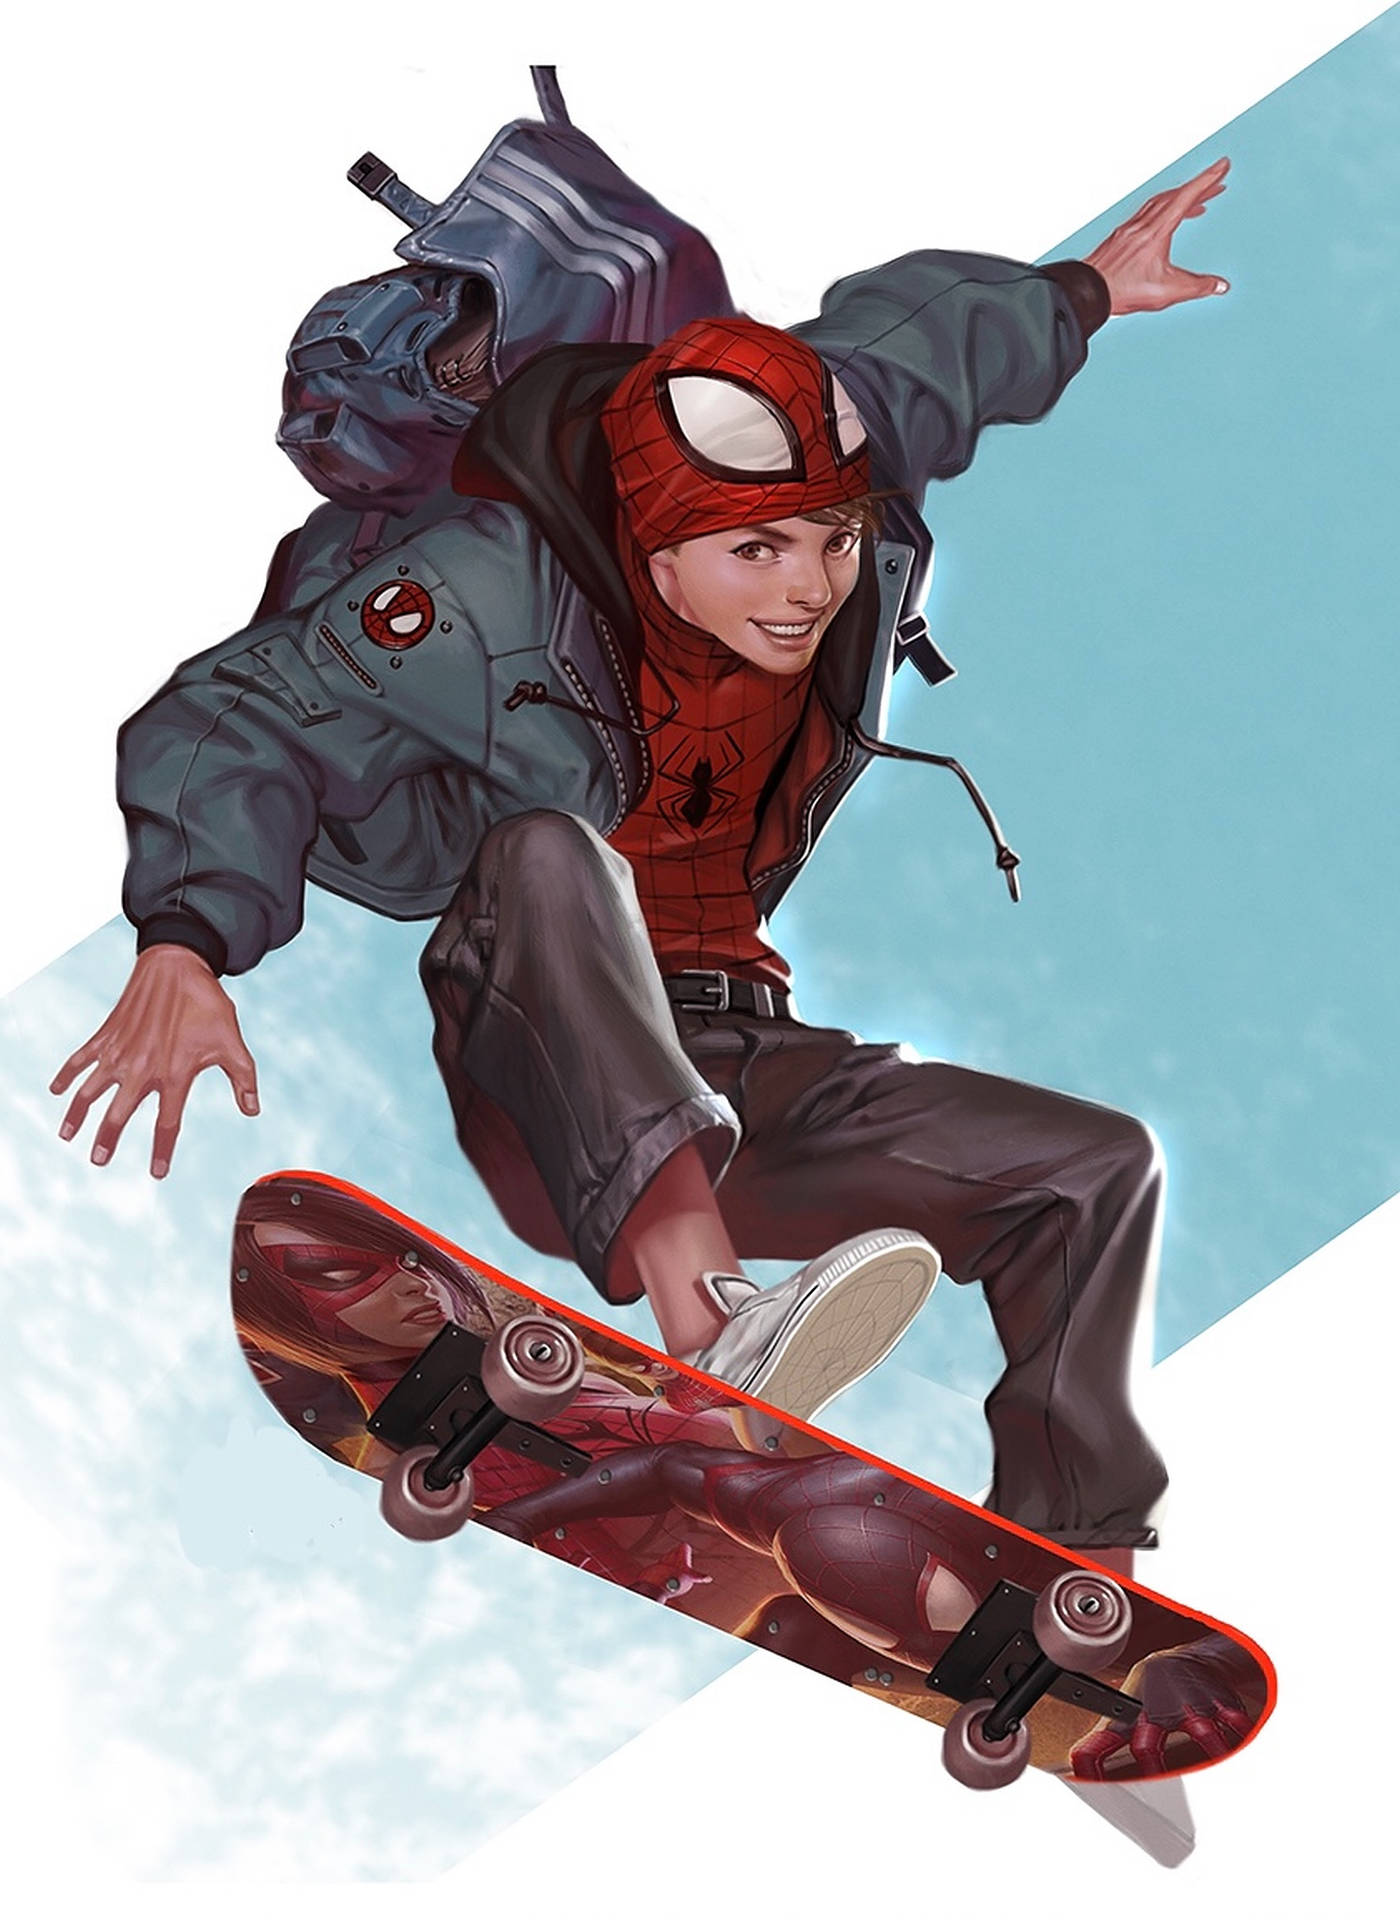 Aesthetic Superhero Skater Boy Background